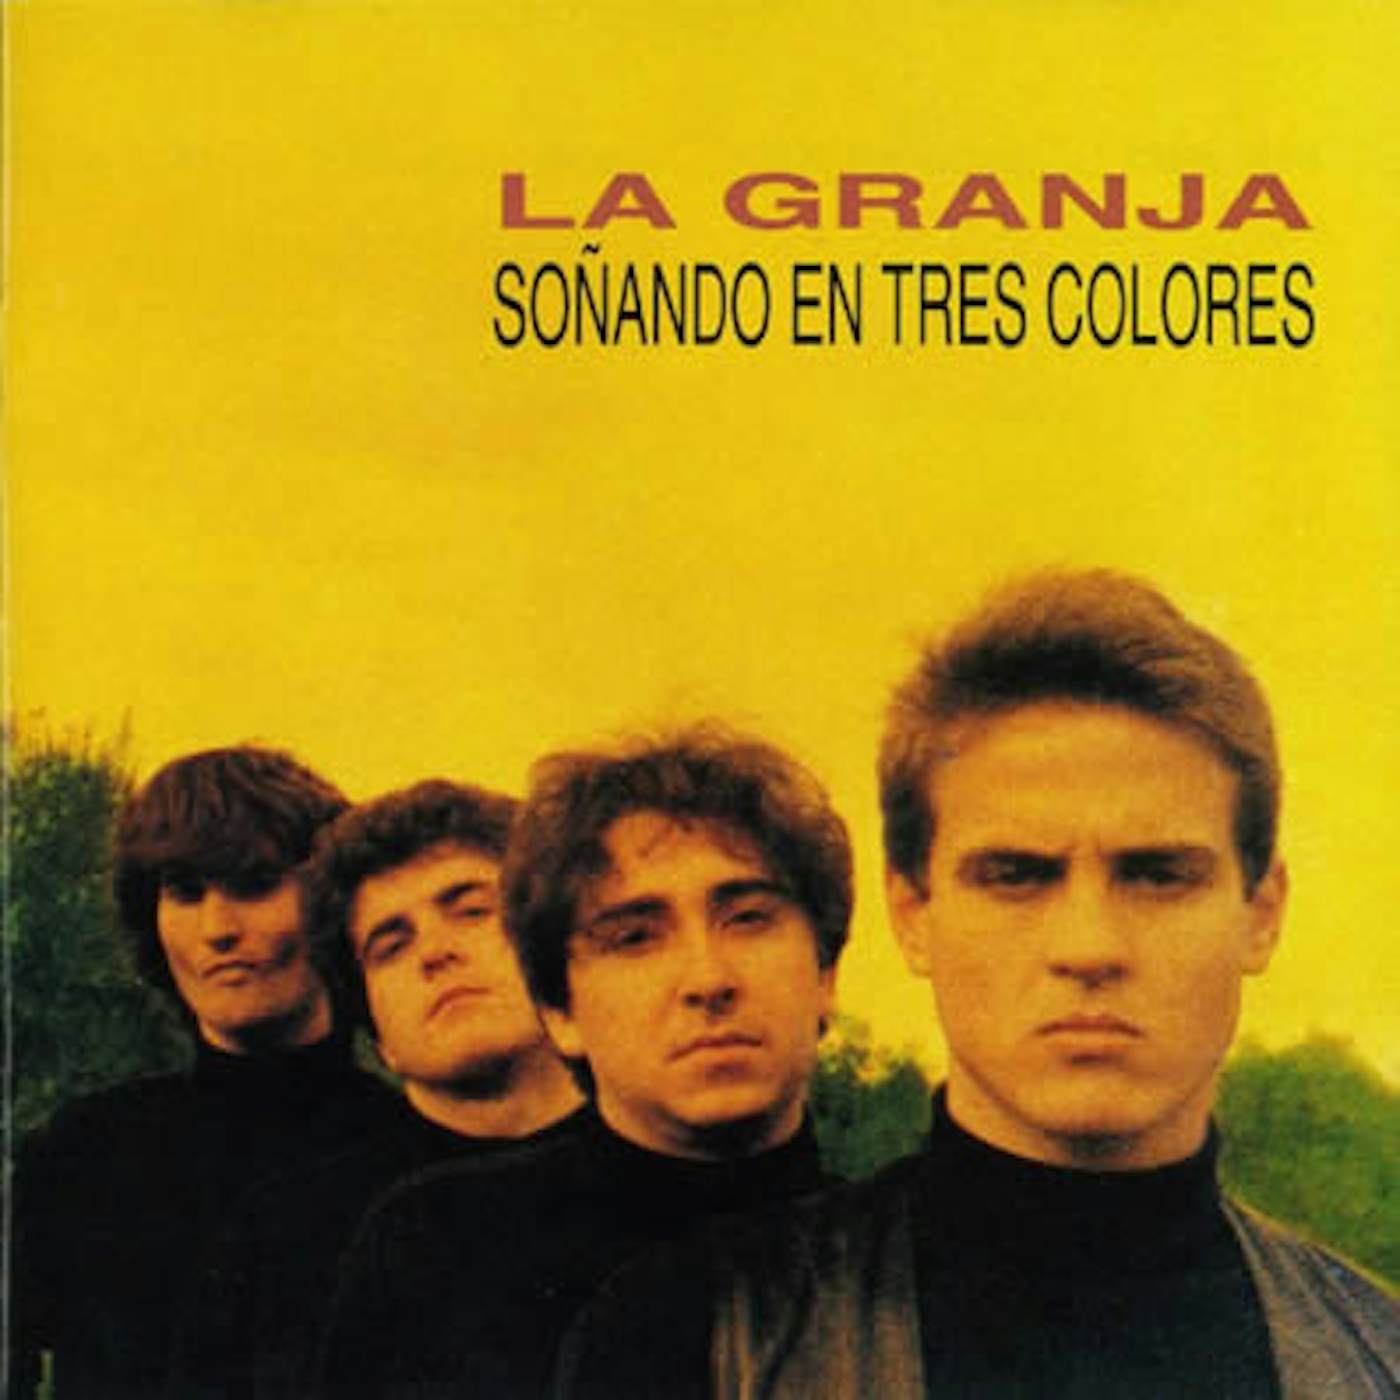 La Granja SONANDO EN 3 COLORES Vinyl Record